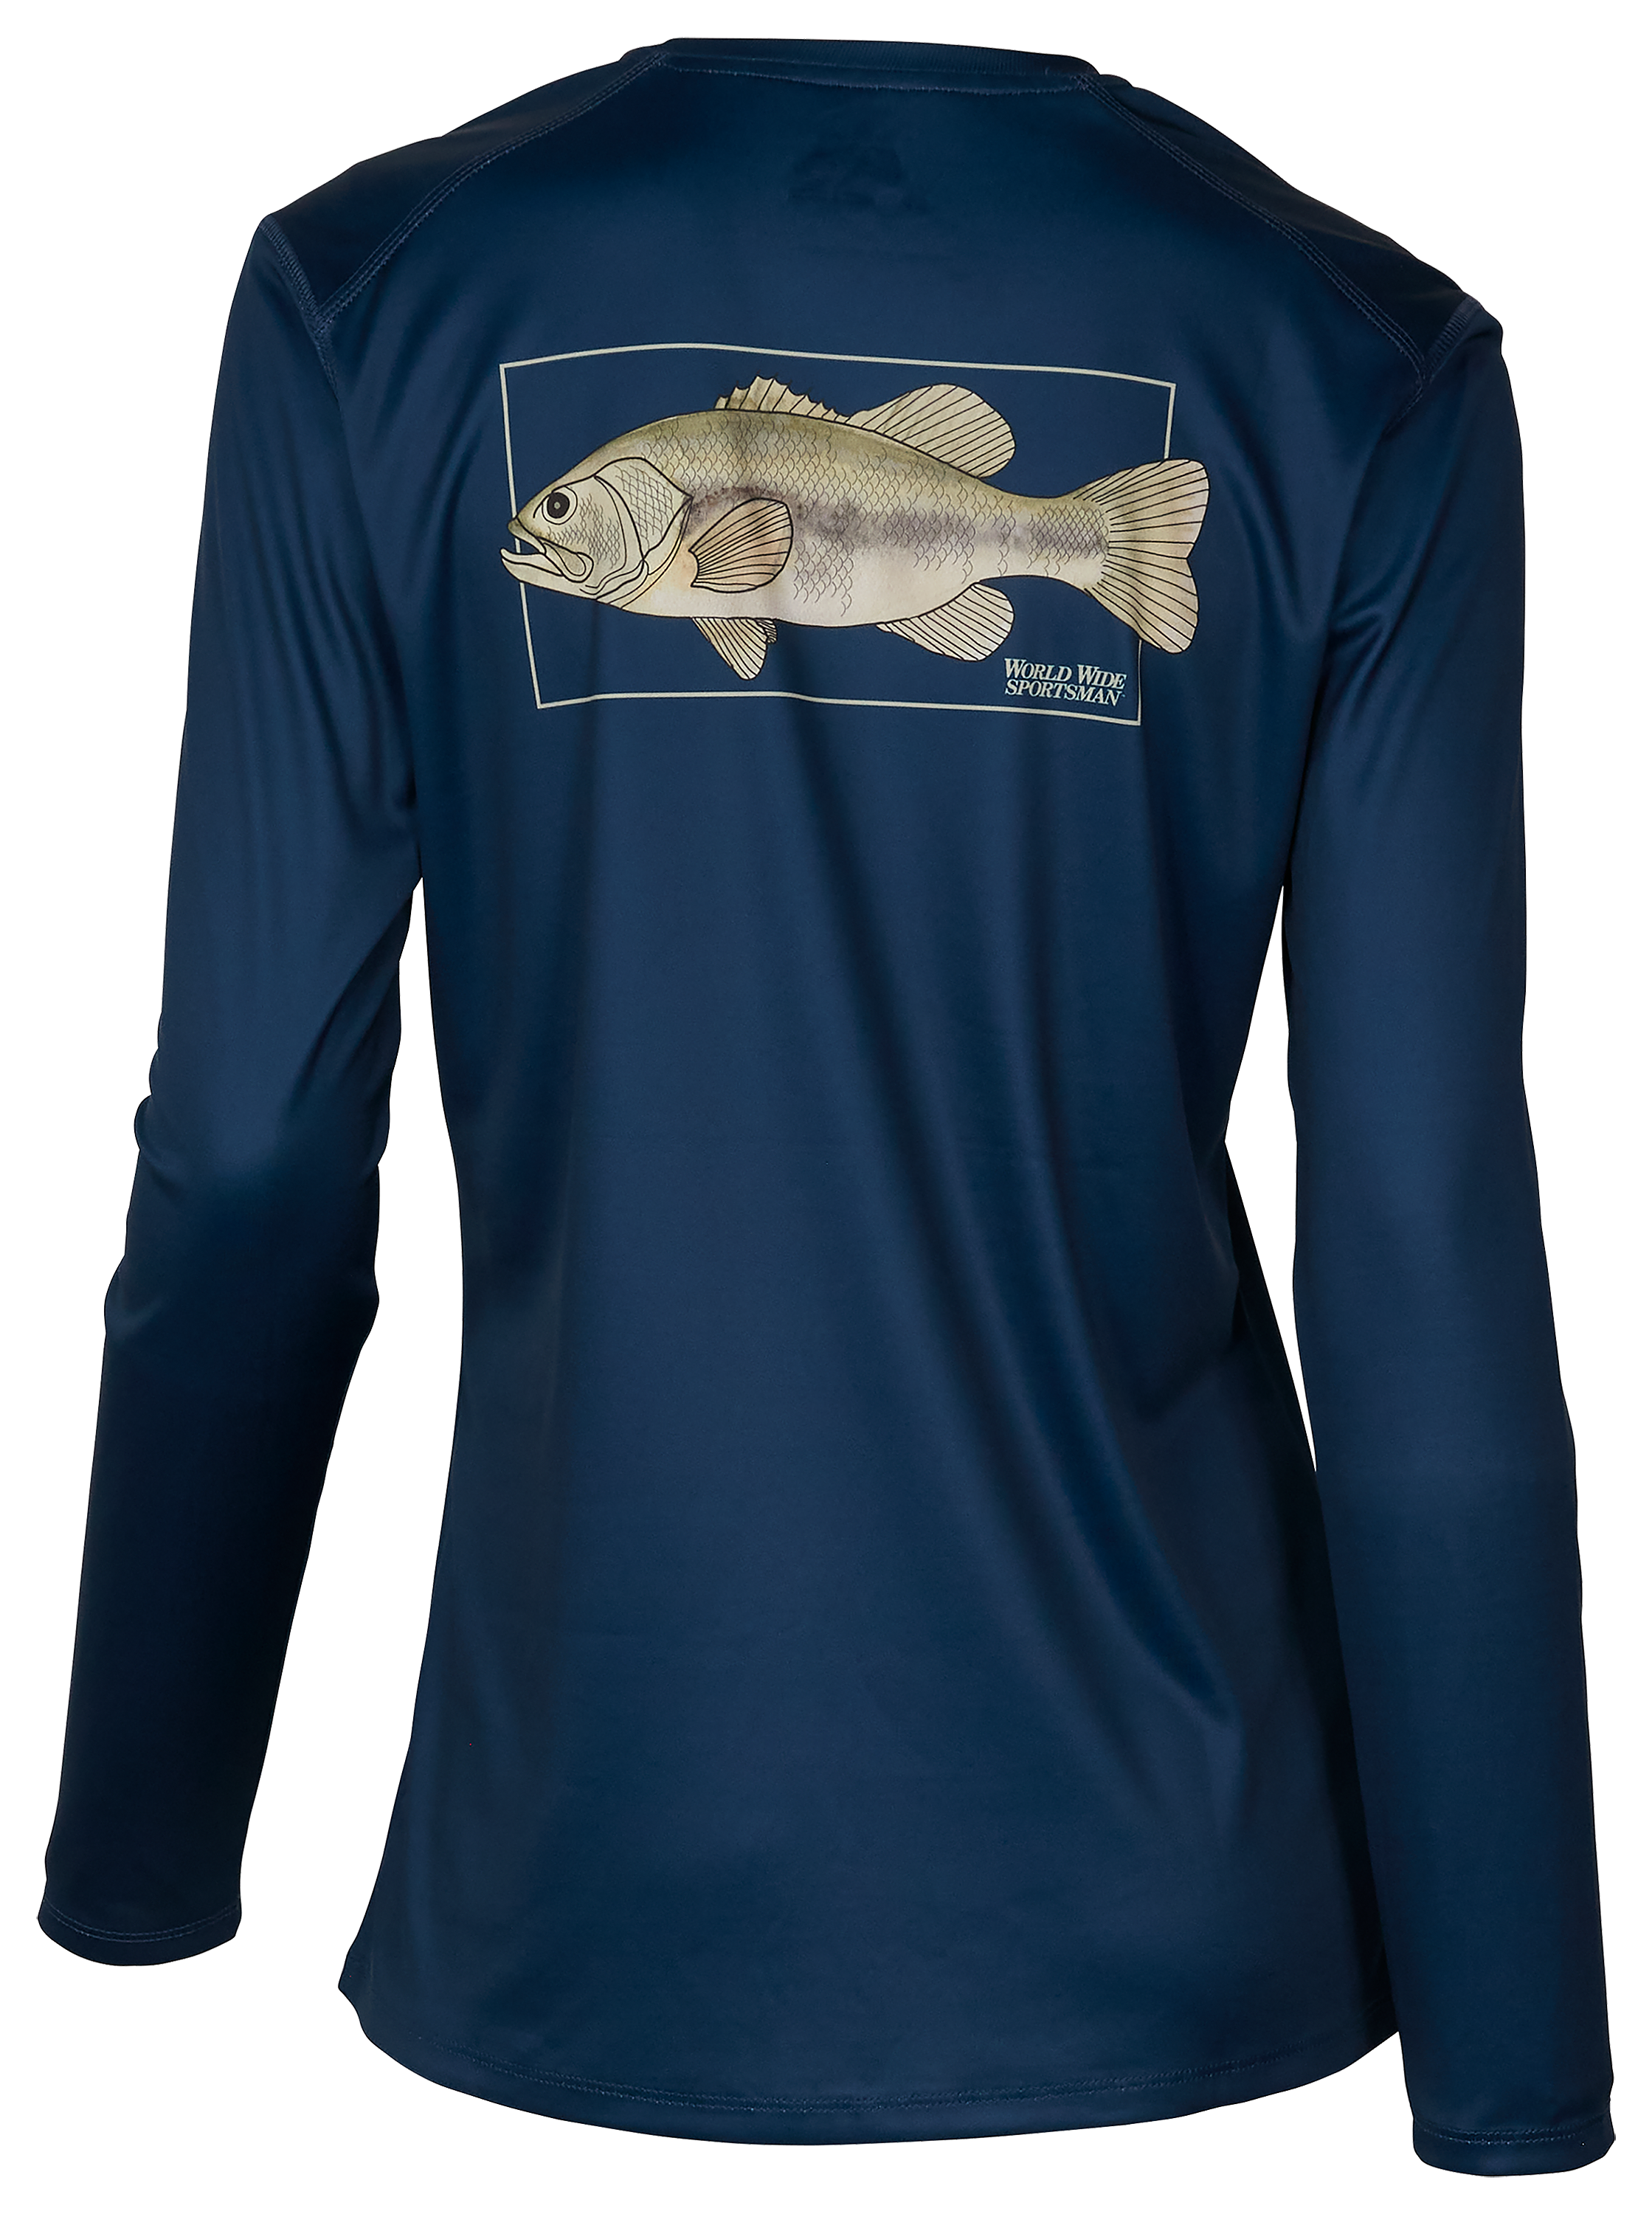 This Girl Loves Fishing T-Shirt gh bass fishing shirt,bass pro